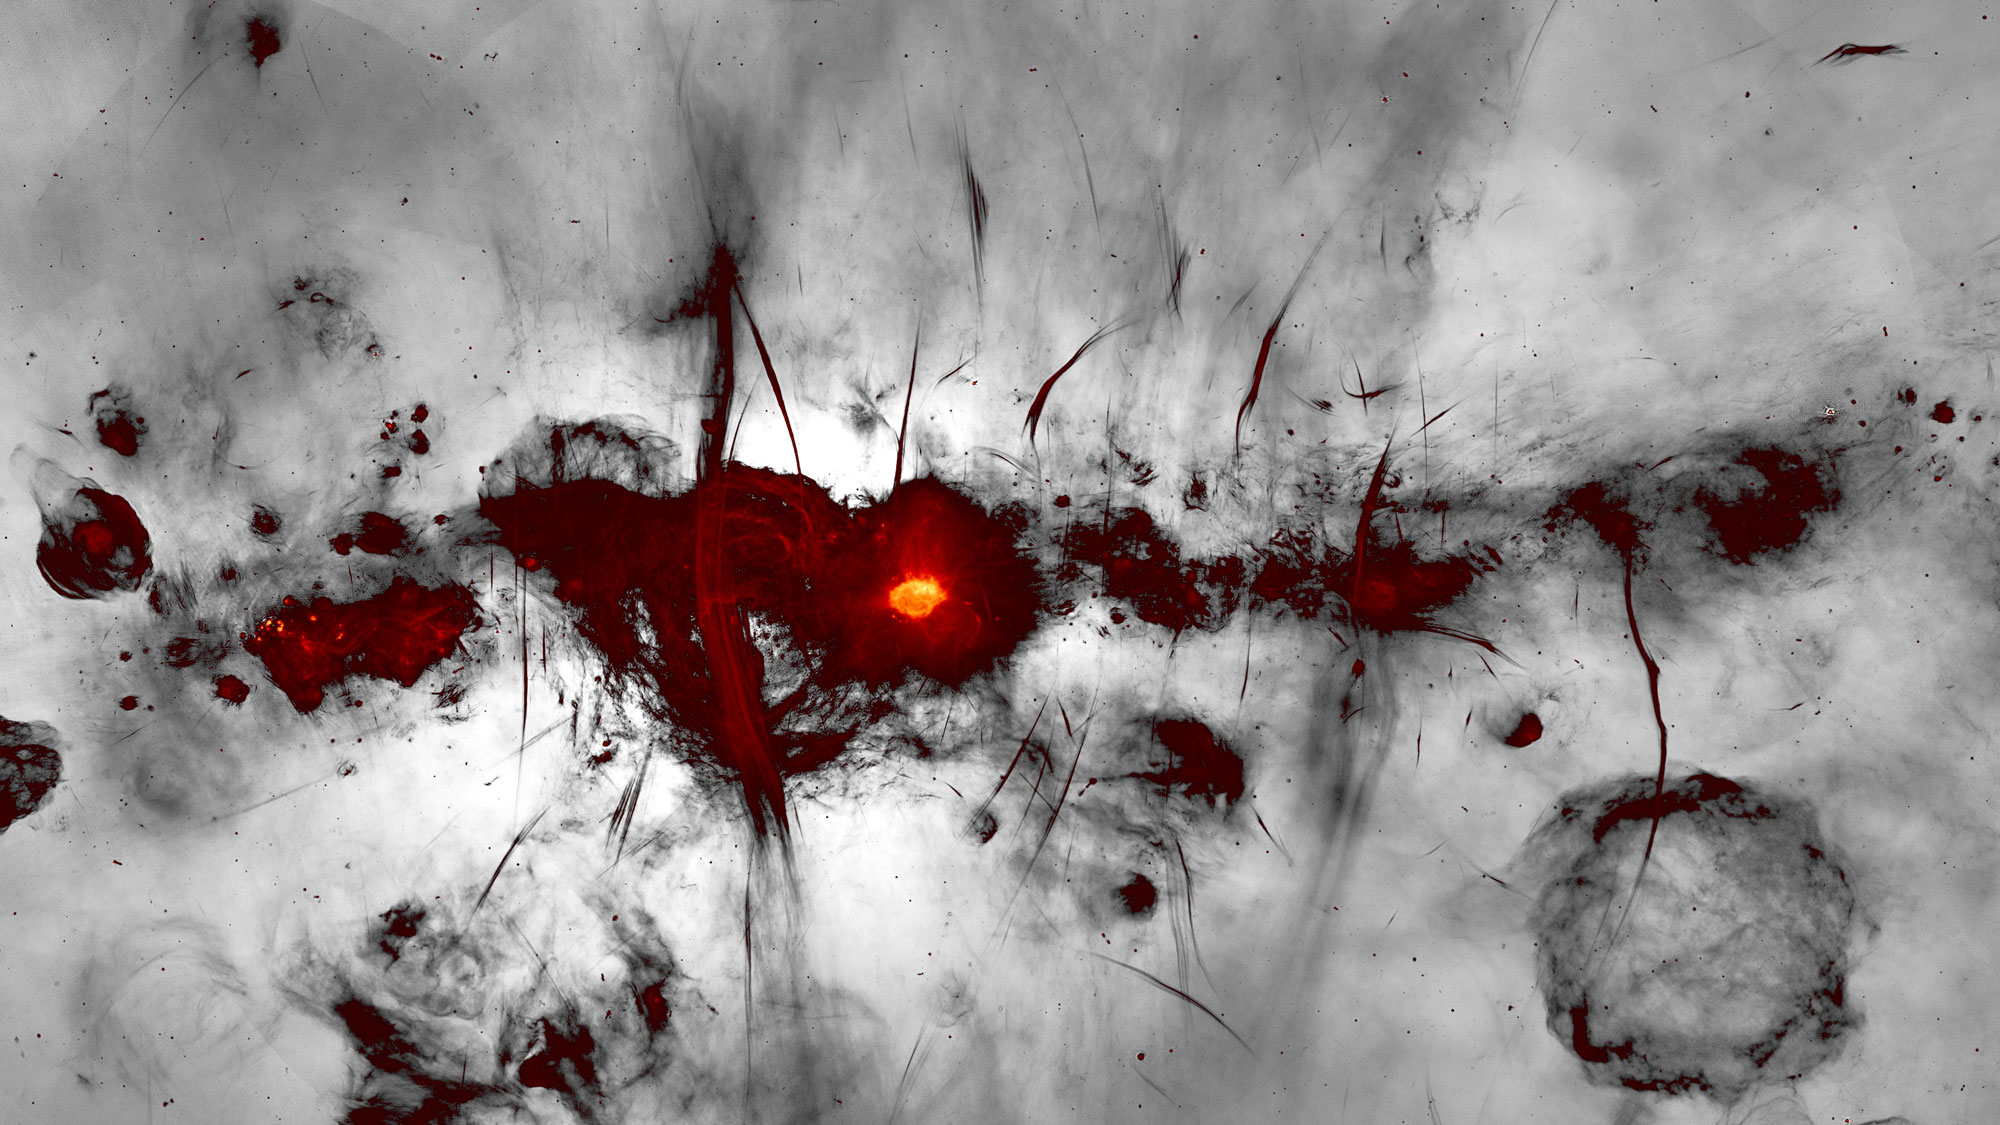 New MeerKAT radio image reveals complex heart of the Milky Way